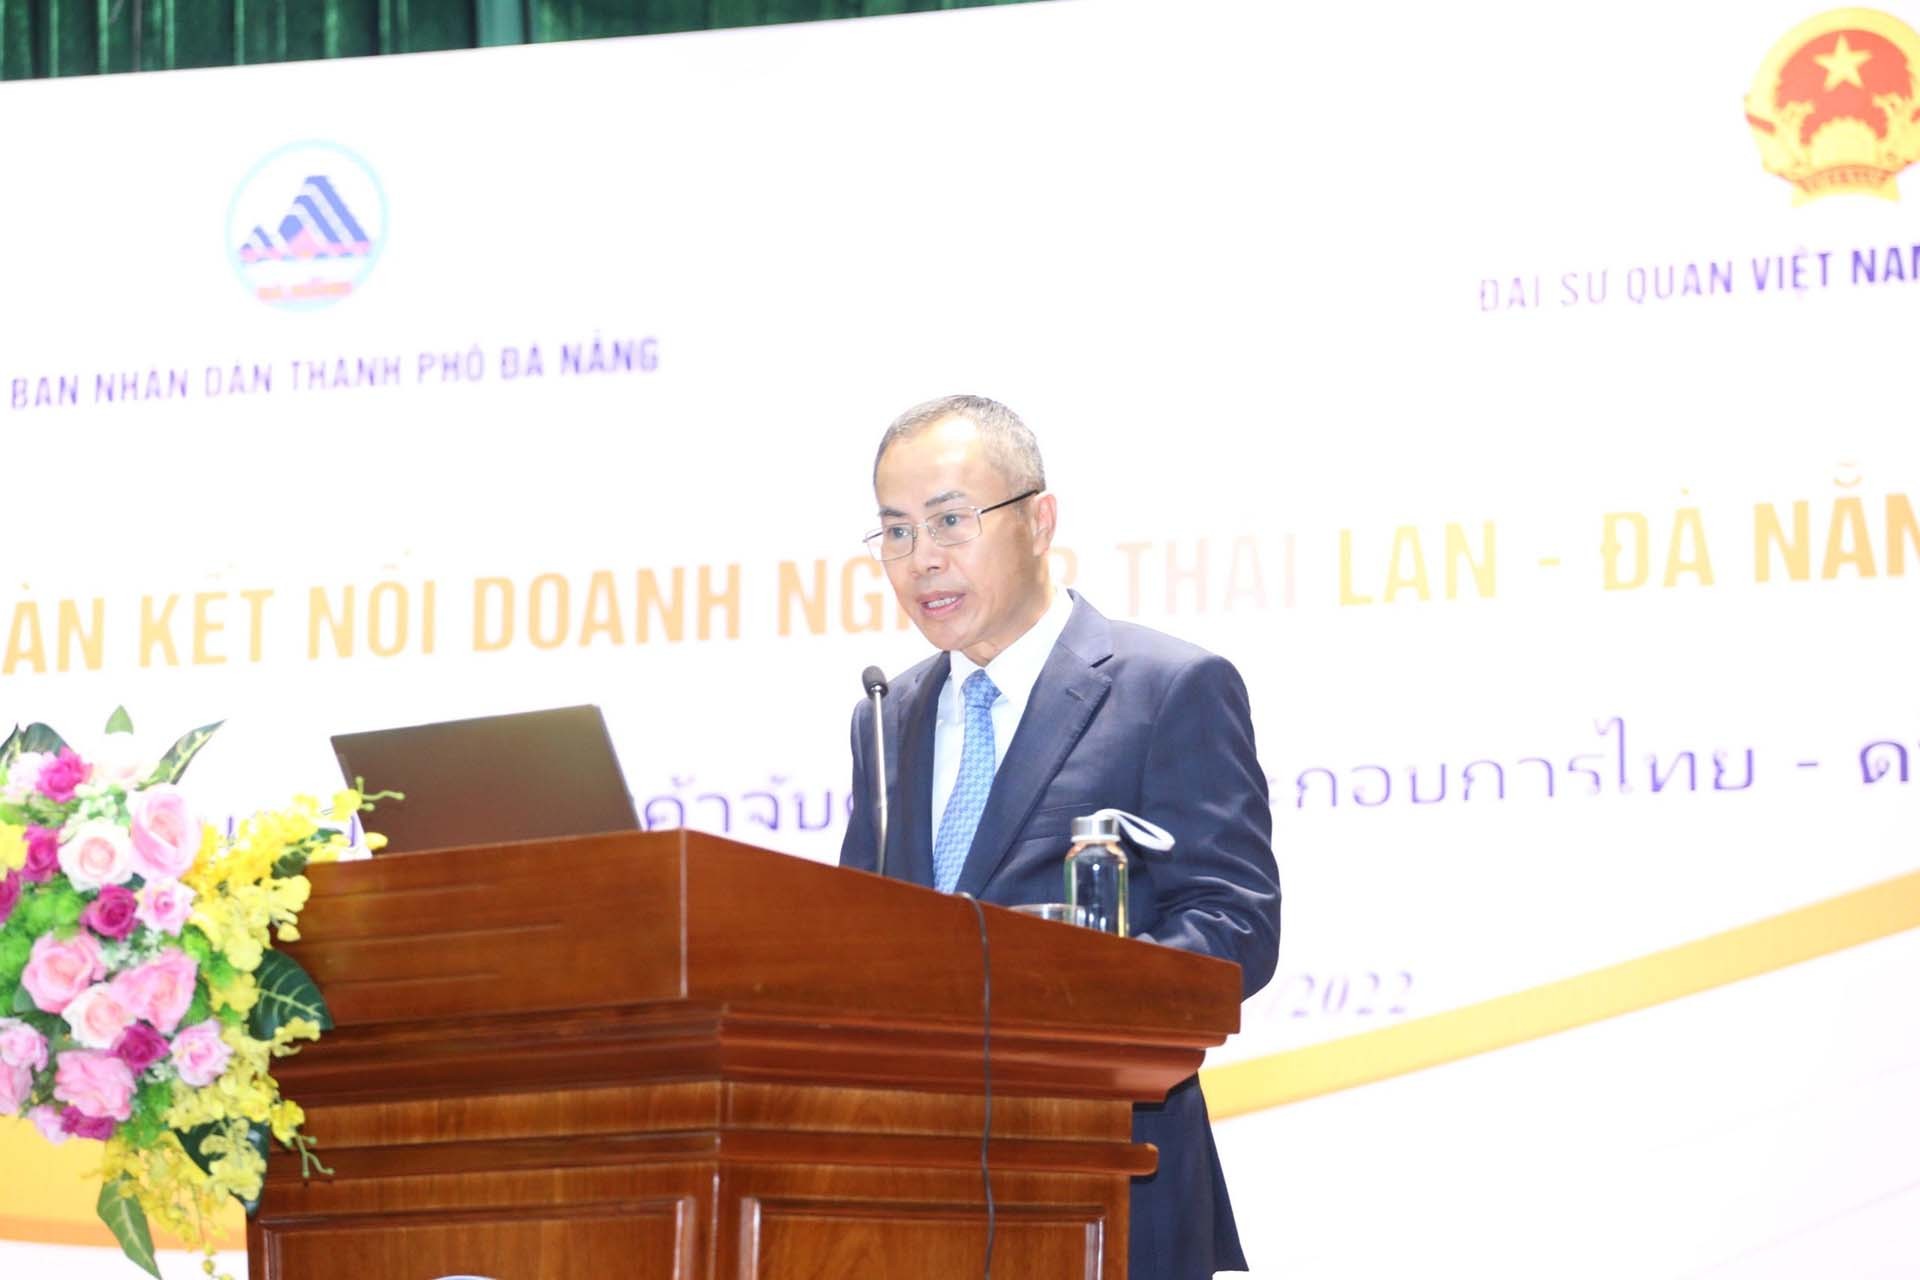 Đại sứ Việt Nam tại Thái Lan Phan Chí Thành phát biểu tại Phiên khai mạc Diễn đàn Kết nối doanh nghiệp Thái Lan-Đà Nẵng.